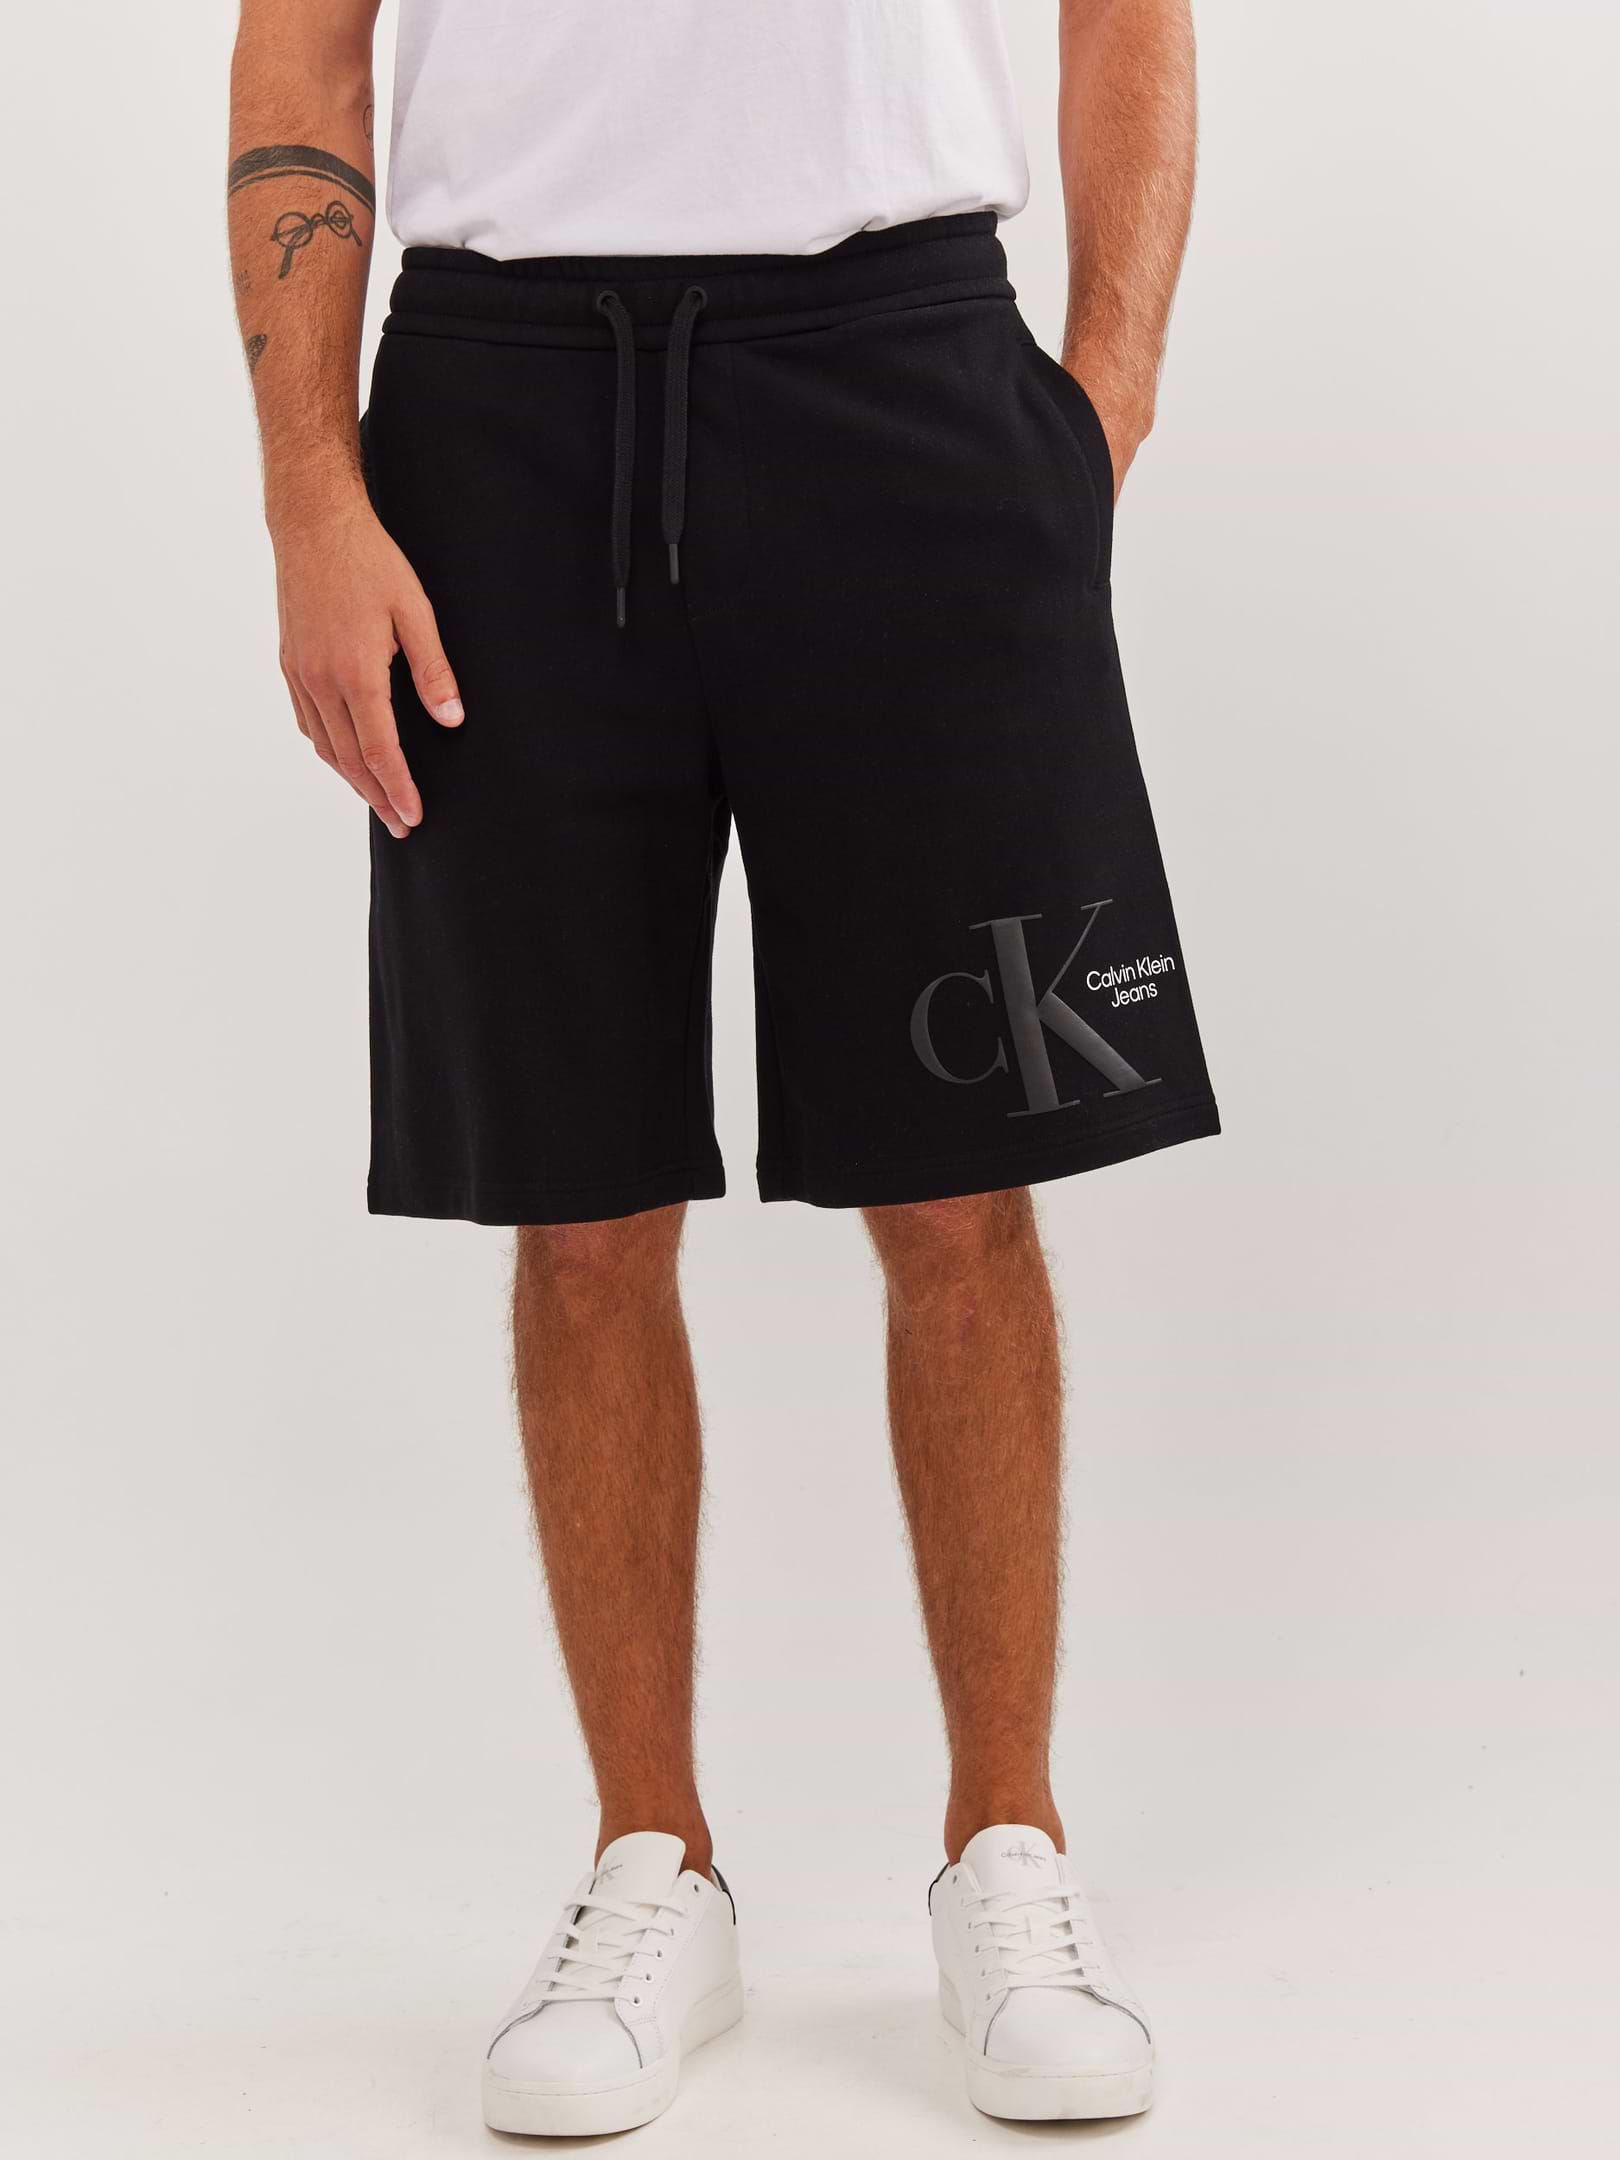 מכנסי ברמודה עם הדפס לוגו- Ck|קלווין קליין